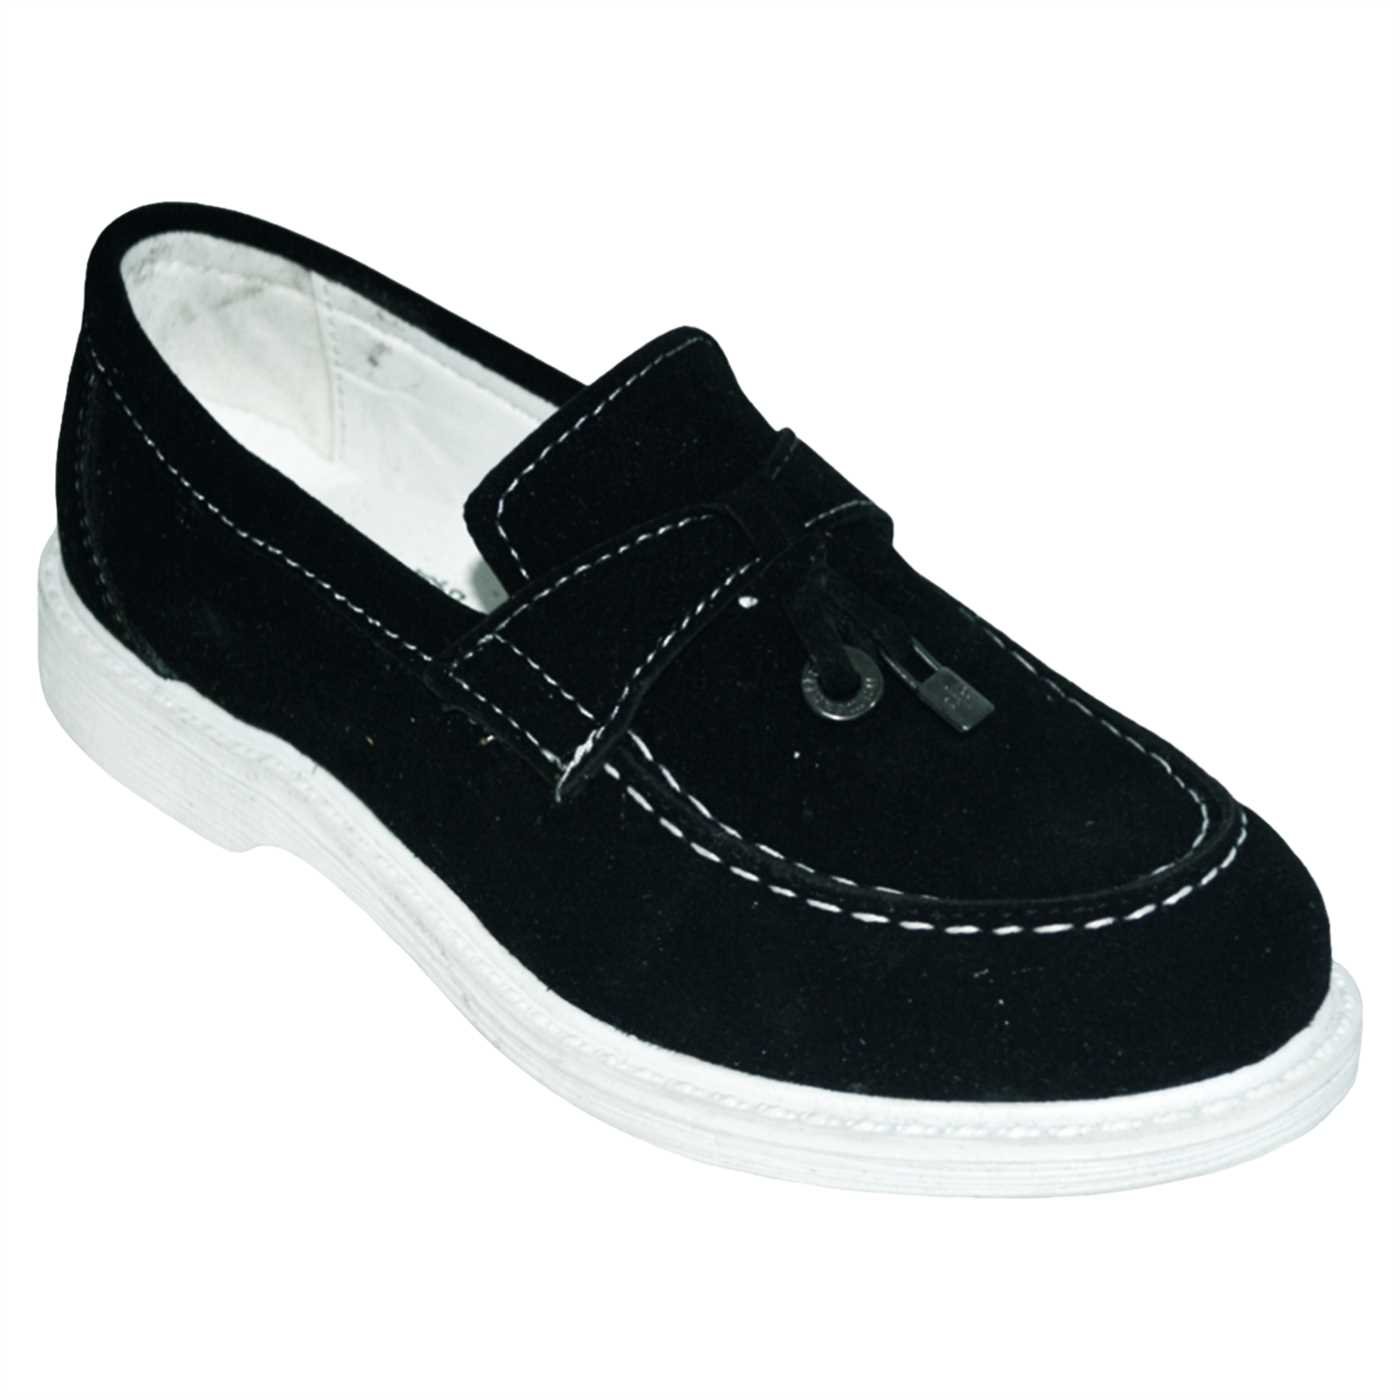 Çocuk Filet Günlük Ayakkabı - siyah/beyaz taban